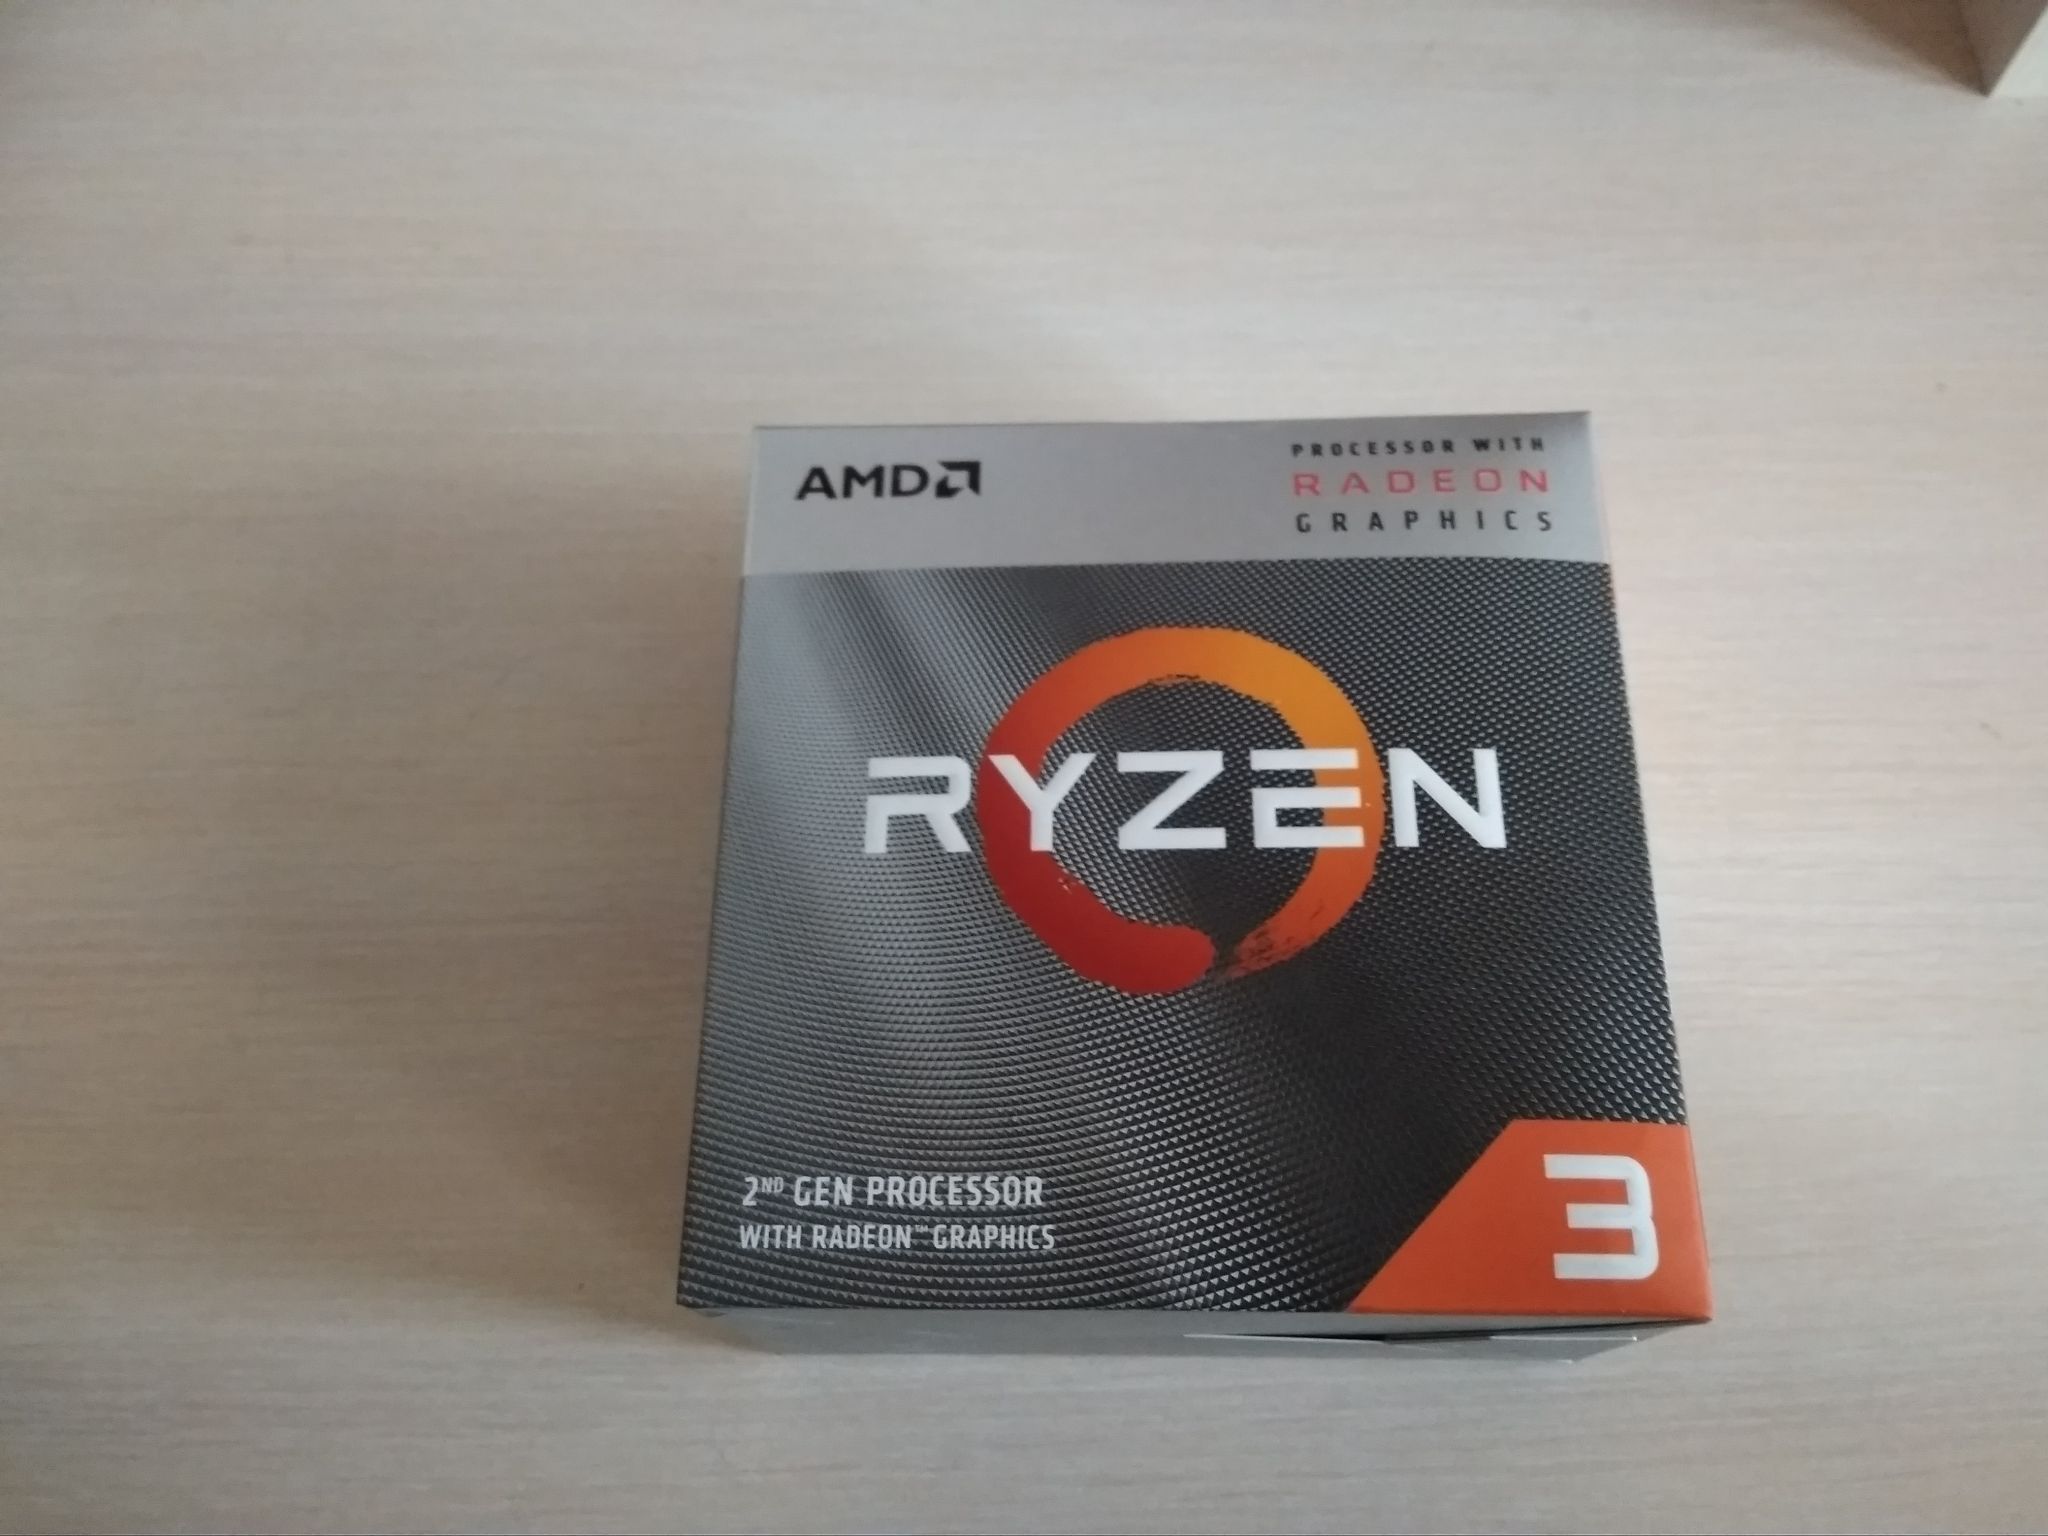 3 pro 3200g. AMD Ryzen 3 3200g. Процессор AMD Ryzen 3 3200g Box. AMD Ryzen 3 mobile 3200g. Процессор <am4> Ryzen 3 3200g Box.